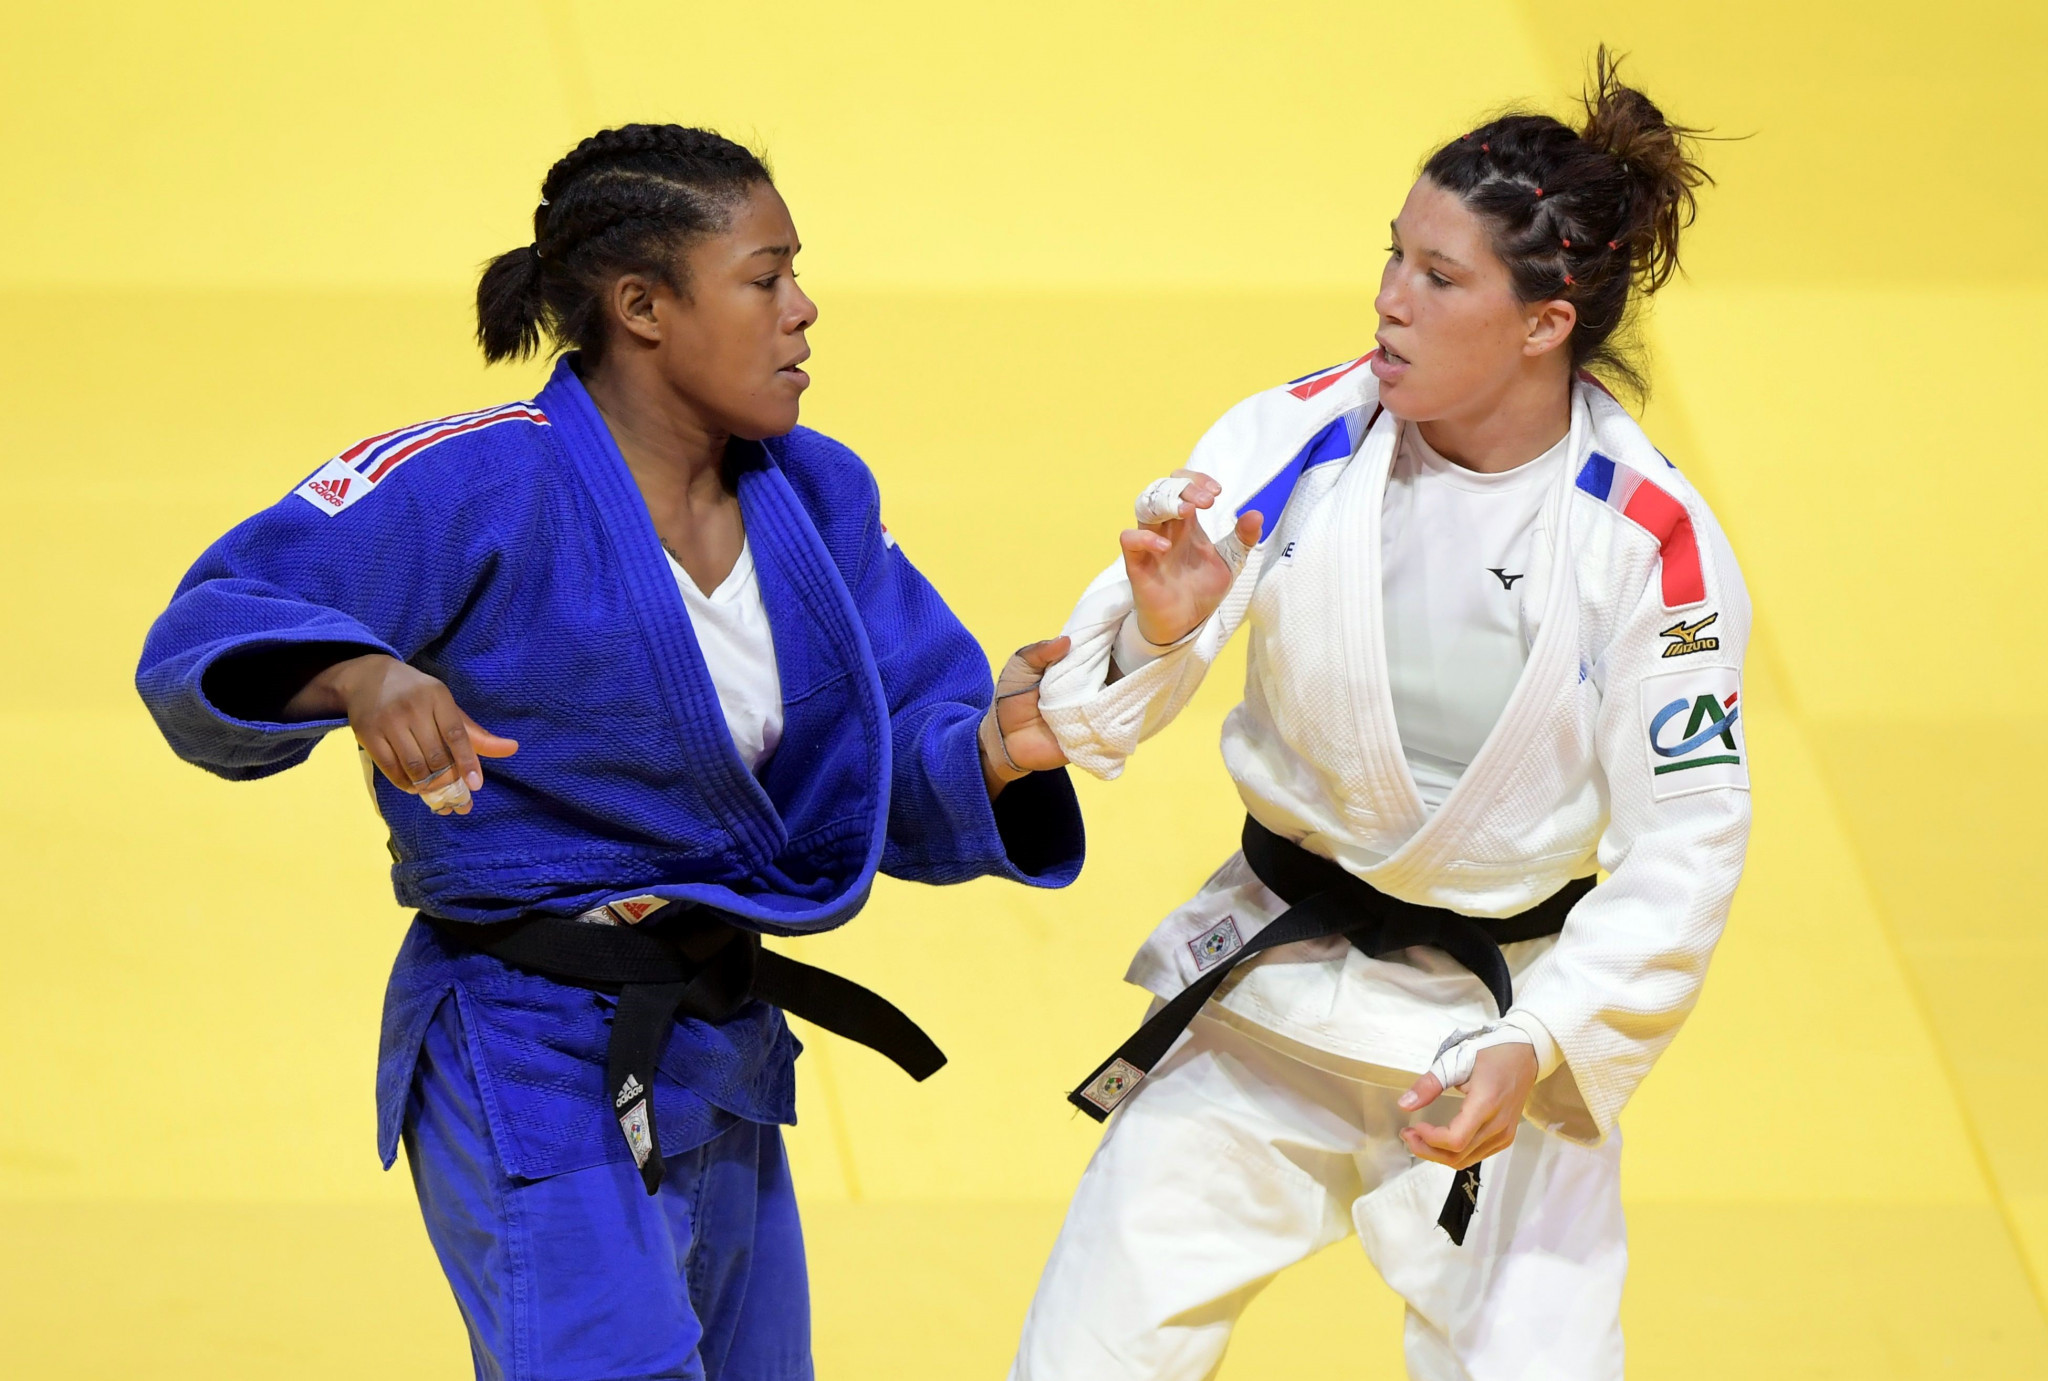 Nekoda Smythe-Davis, a women's under-57kg bronze medallist at the 2017 World Judo Championships, is also on Great Britain's team ©Getty Images